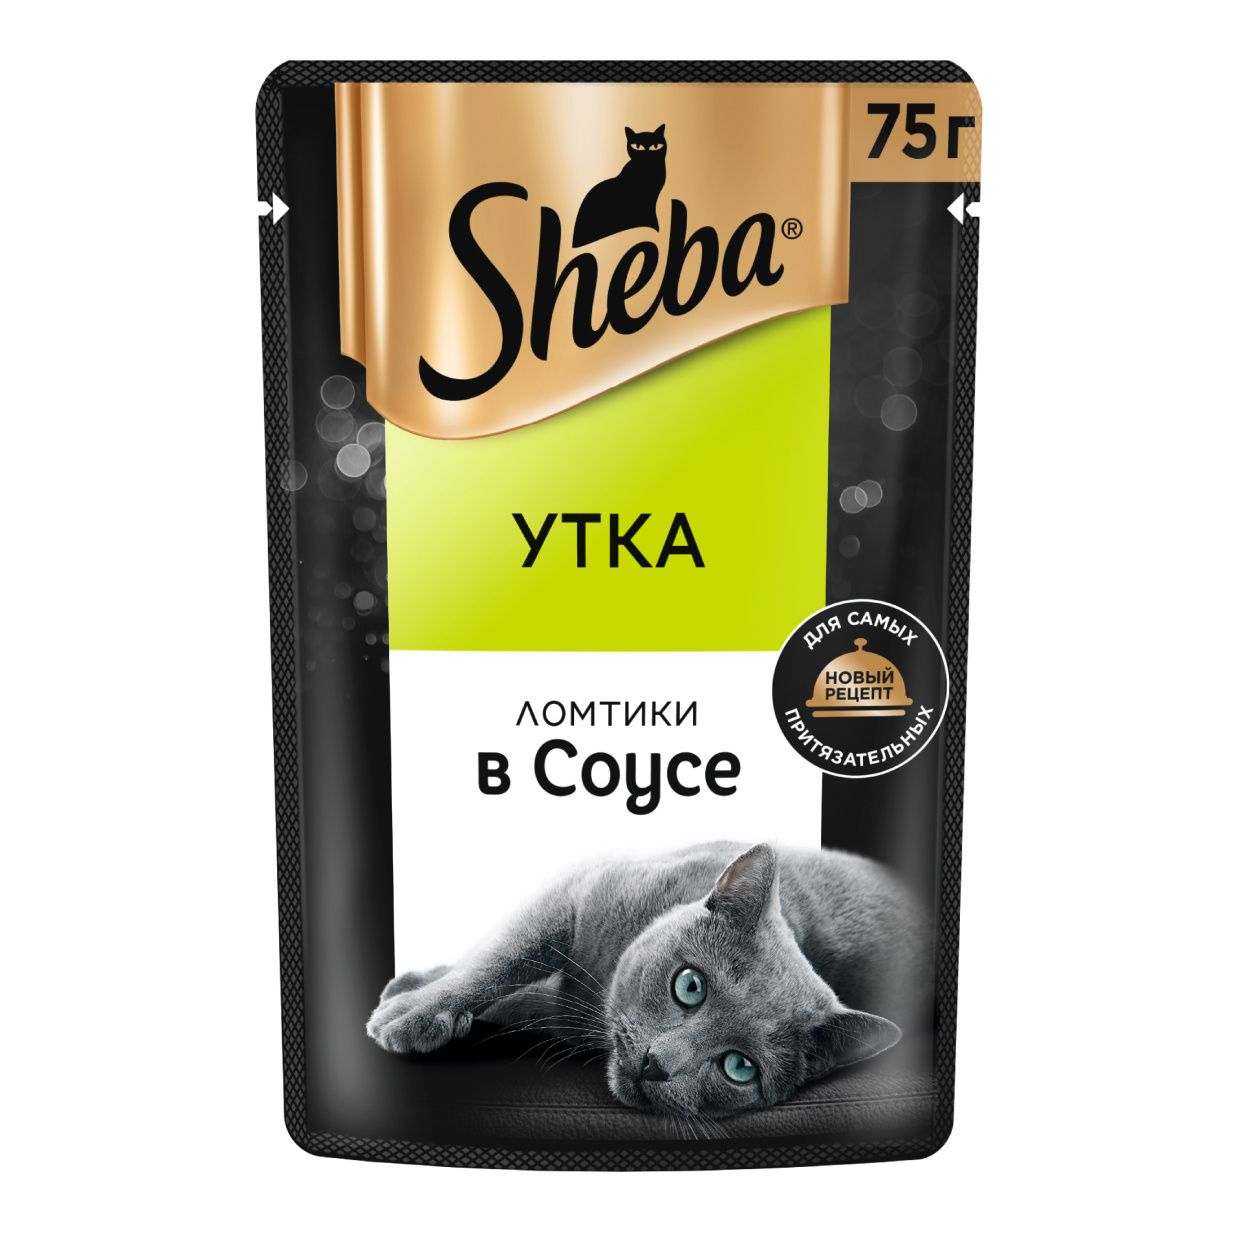 Sheba влажный корм для кошек «Ломтики в соусе с уткой» (75 г)